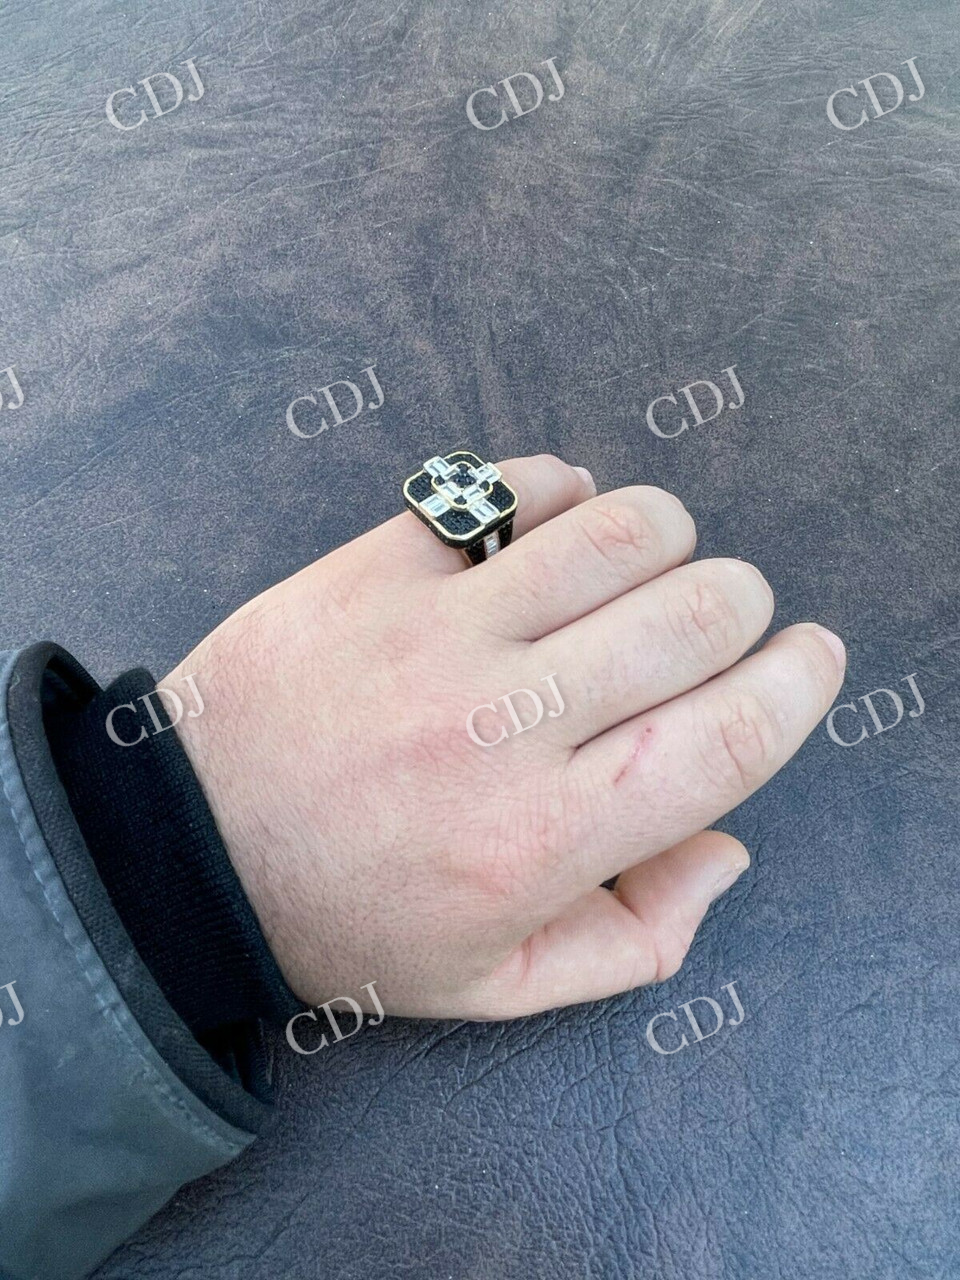 14K Gold Men's Baguette Black Diamond Ring  customdiamjewel   